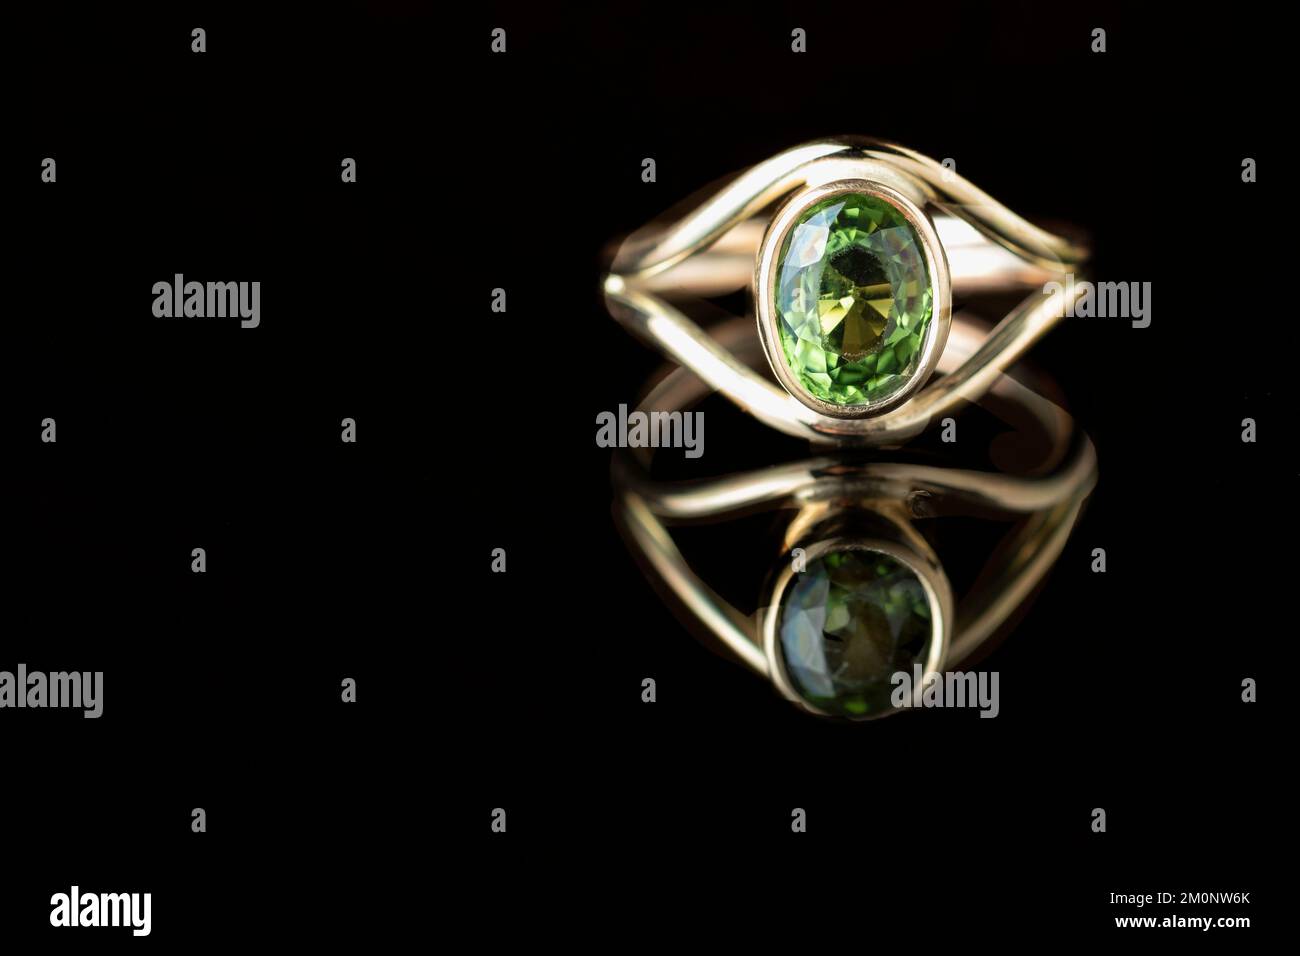 Une femme fait à la commande bague d'or fait à la main par un artisan de bijoux. Une grande pierre en cristal vert tourmaline est montée dans l'anneau. Banque D'Images